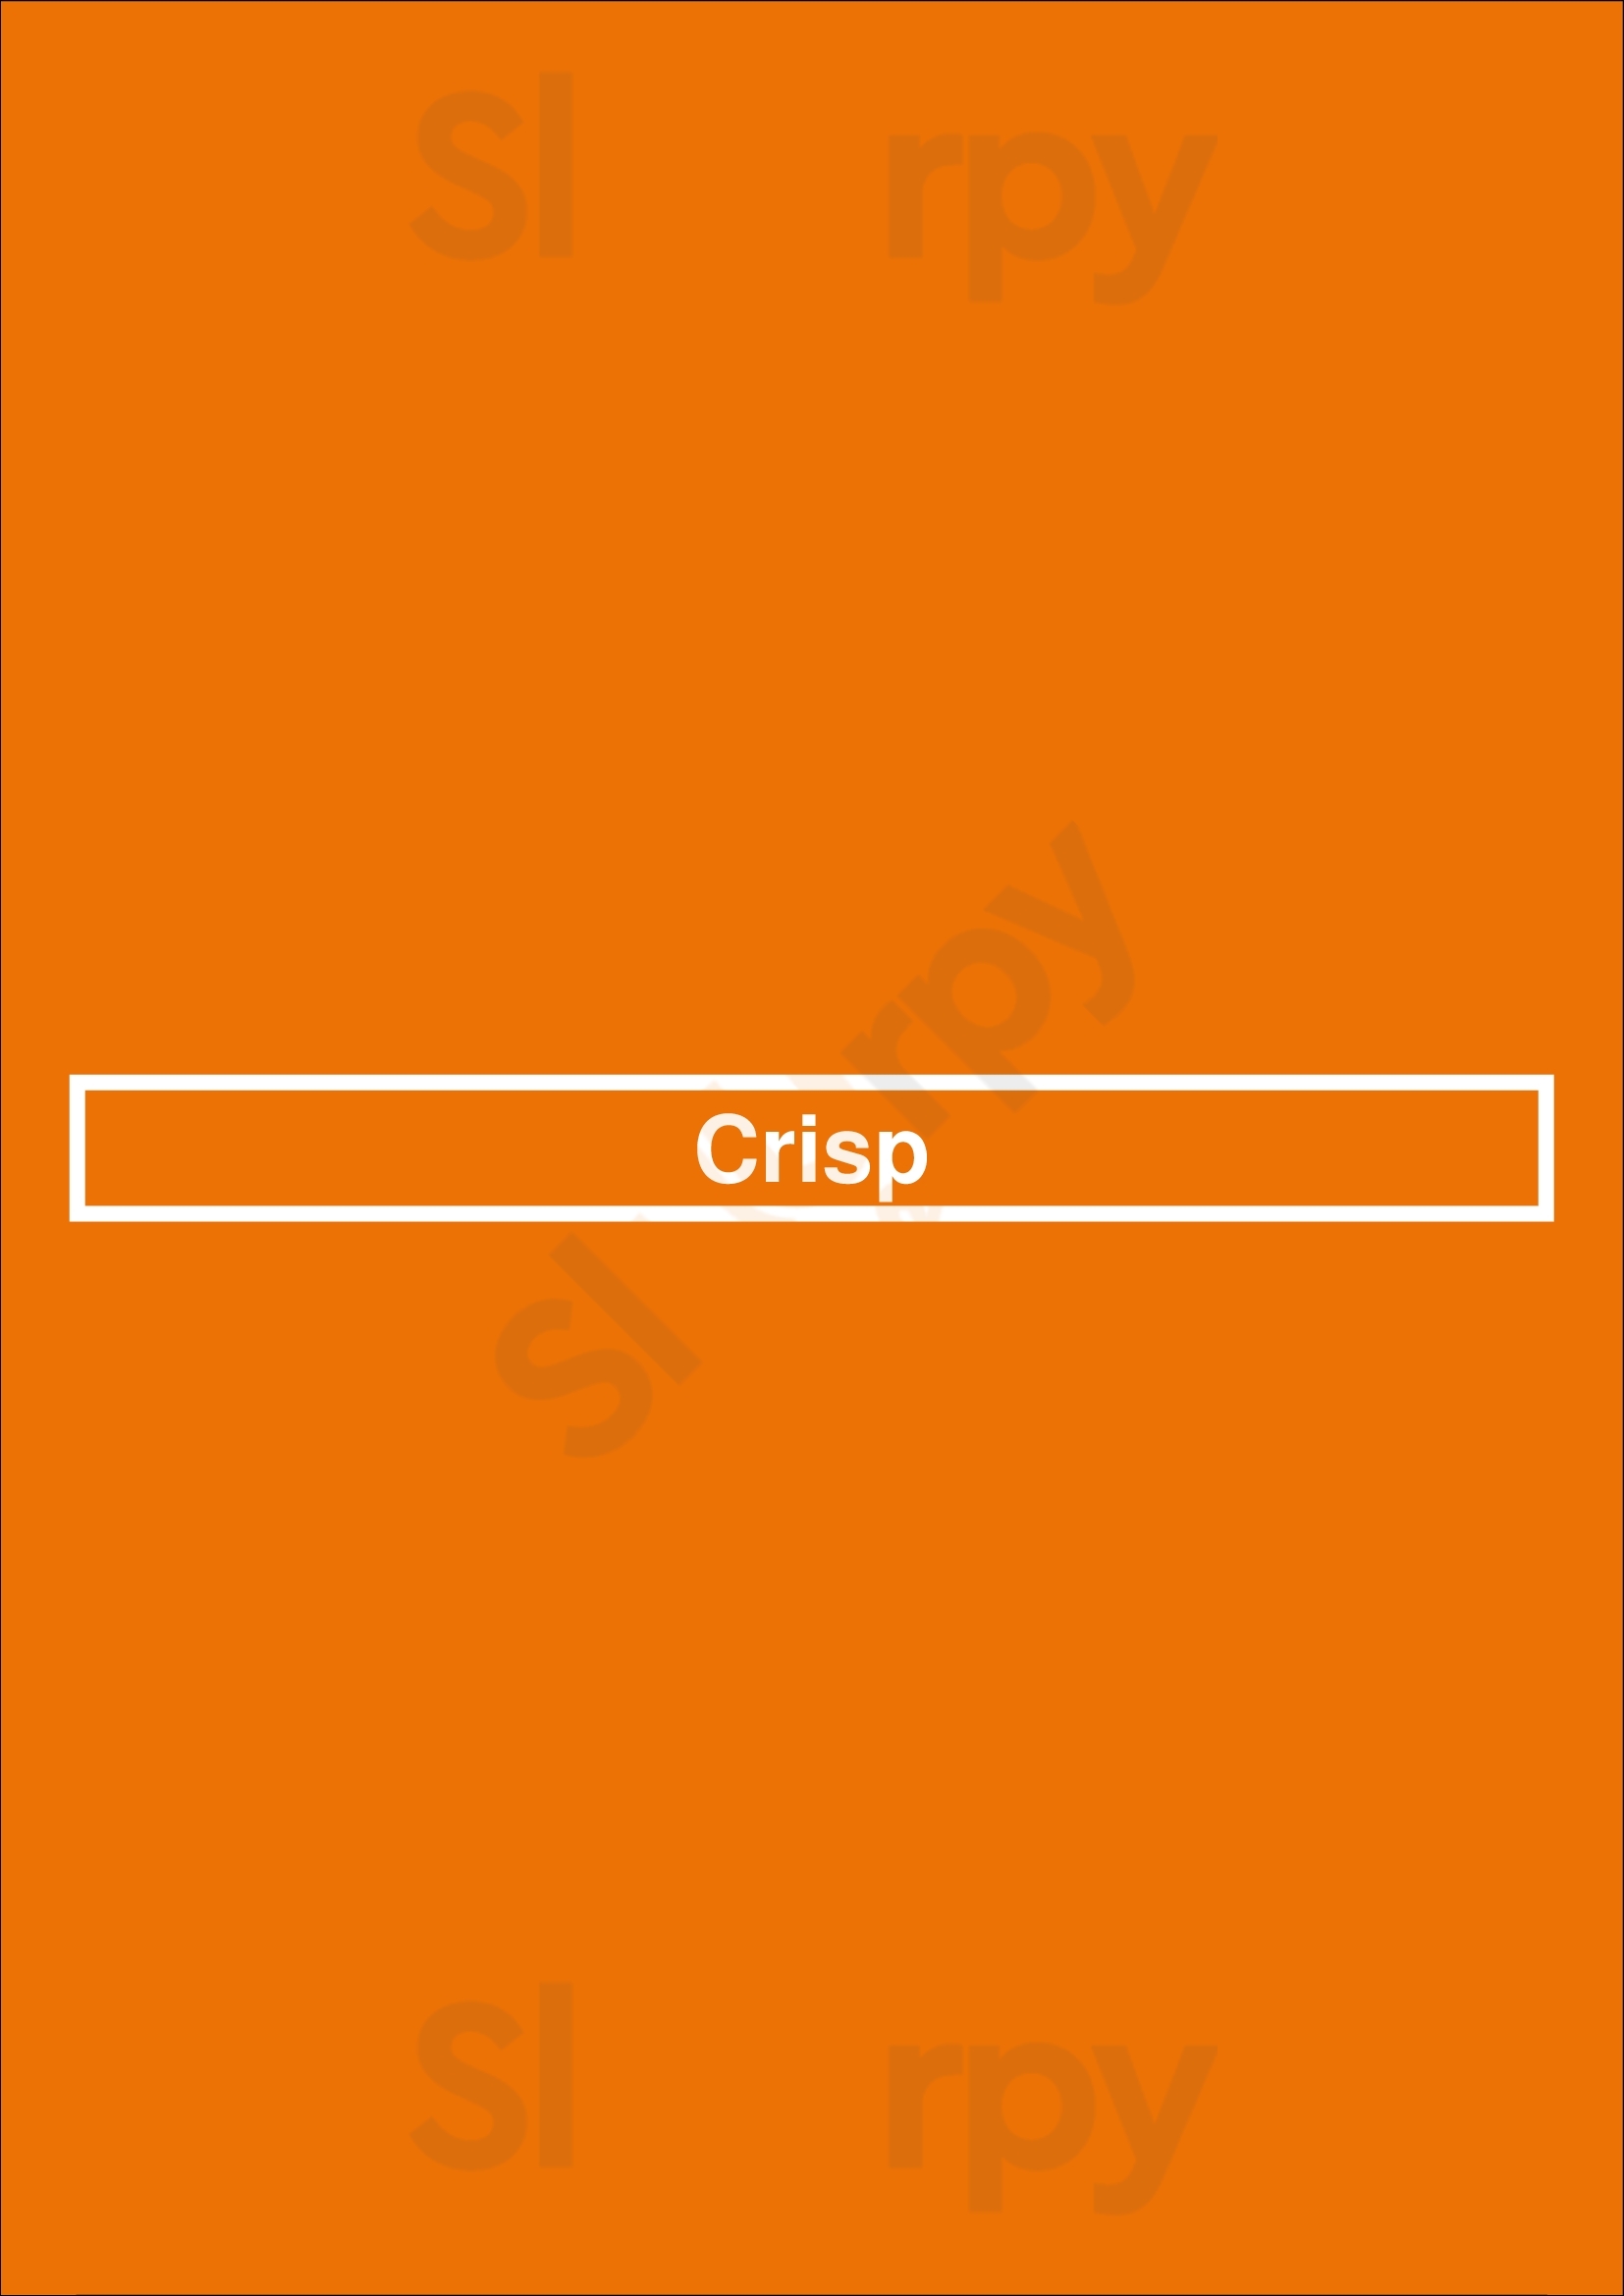 Crisp Houston Menu - 1